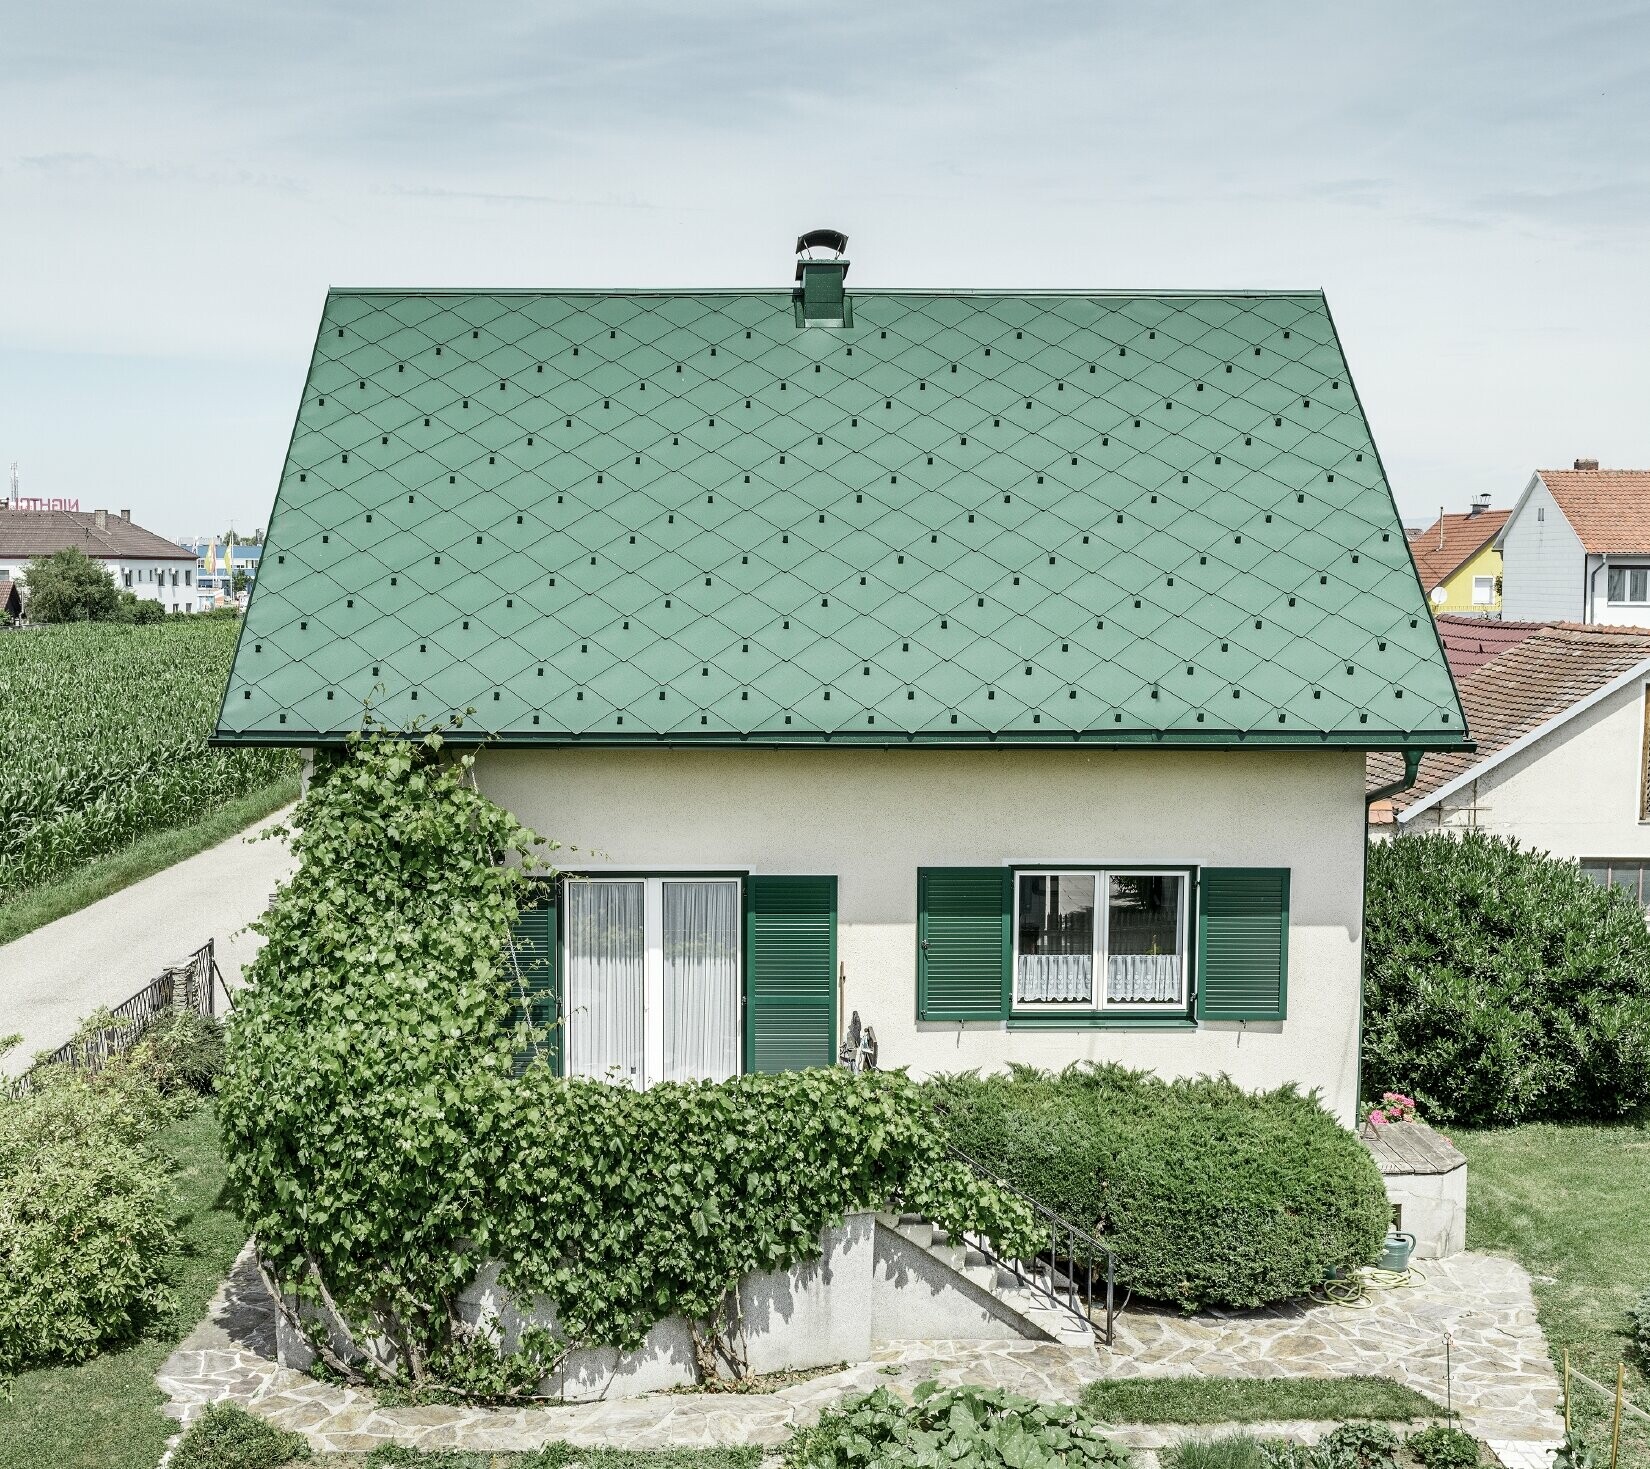 Klasična jednoobiteljska kuća s dvostrešnim krovom s krovnim pokrovom od aluminija u mahovinasto zelenoj boji sa zelenim prozorskim kapcima. Krov je pokriven PREFA krovnim rombovima 44 × 44 u P.10 mahovinasto zelenoj boji.